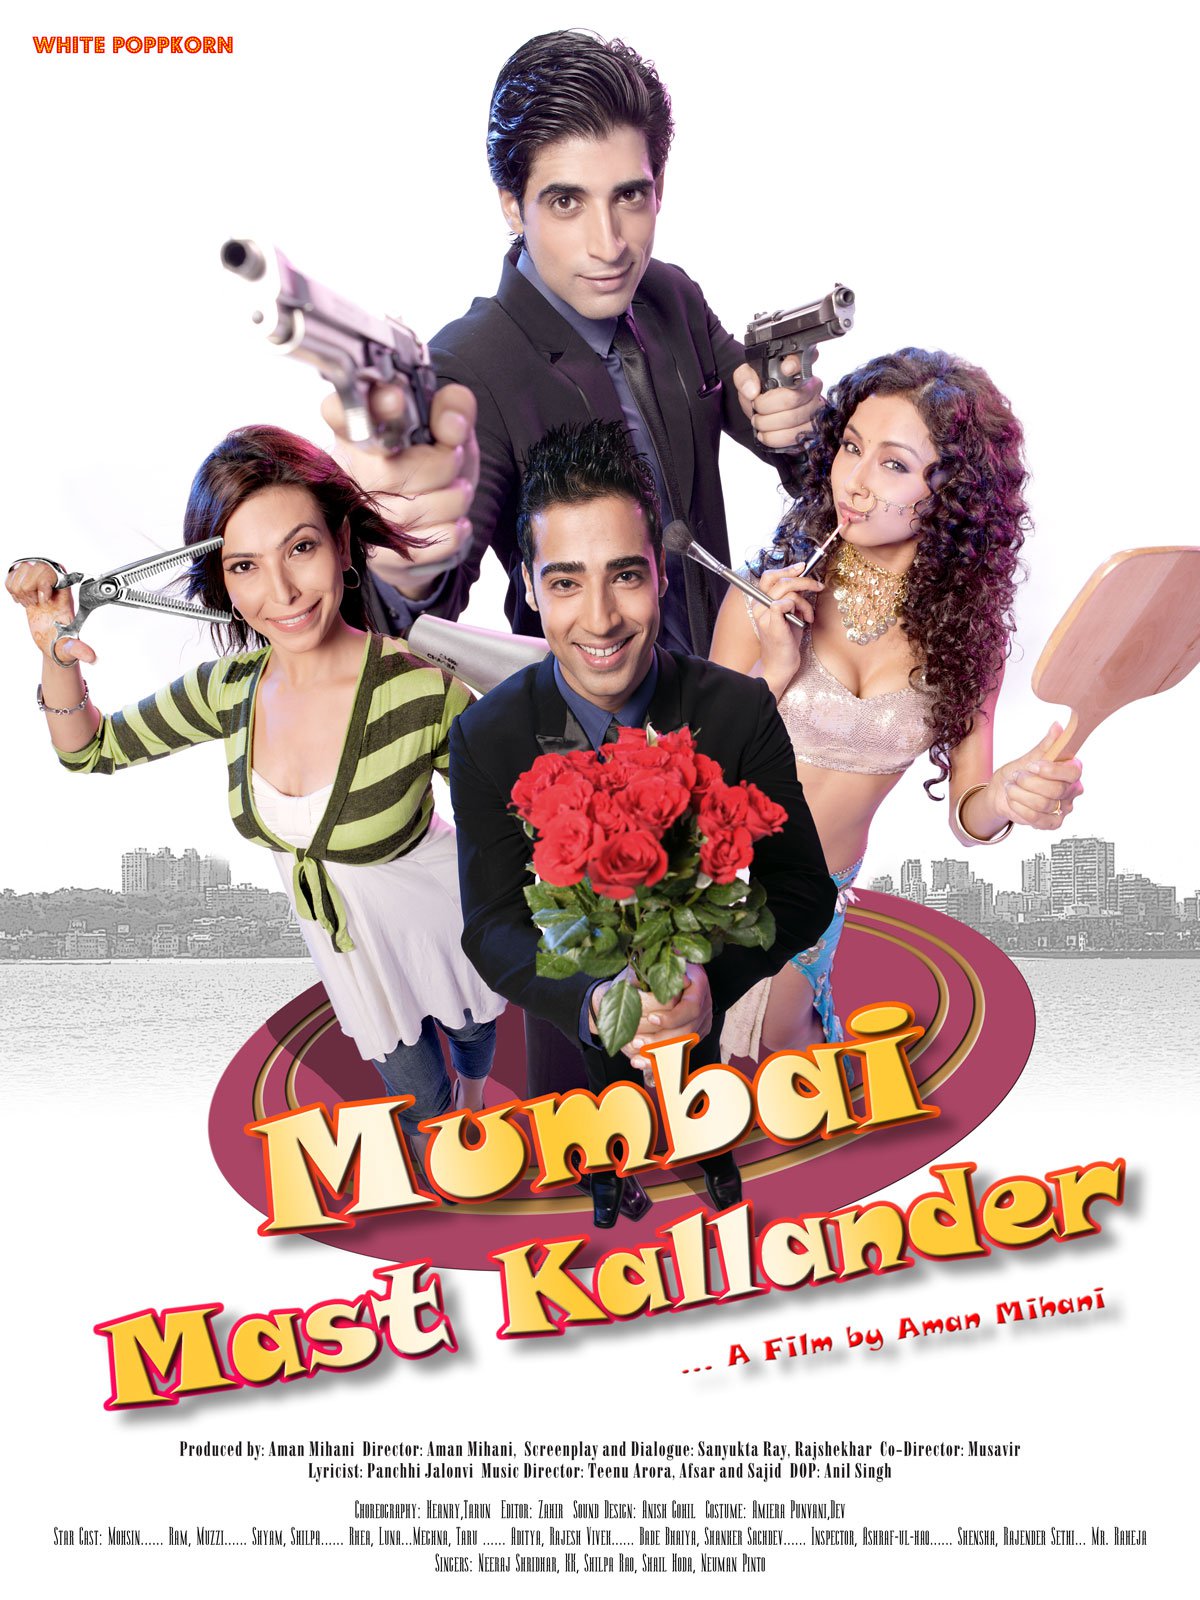 Mumbai Mast Kallander movie